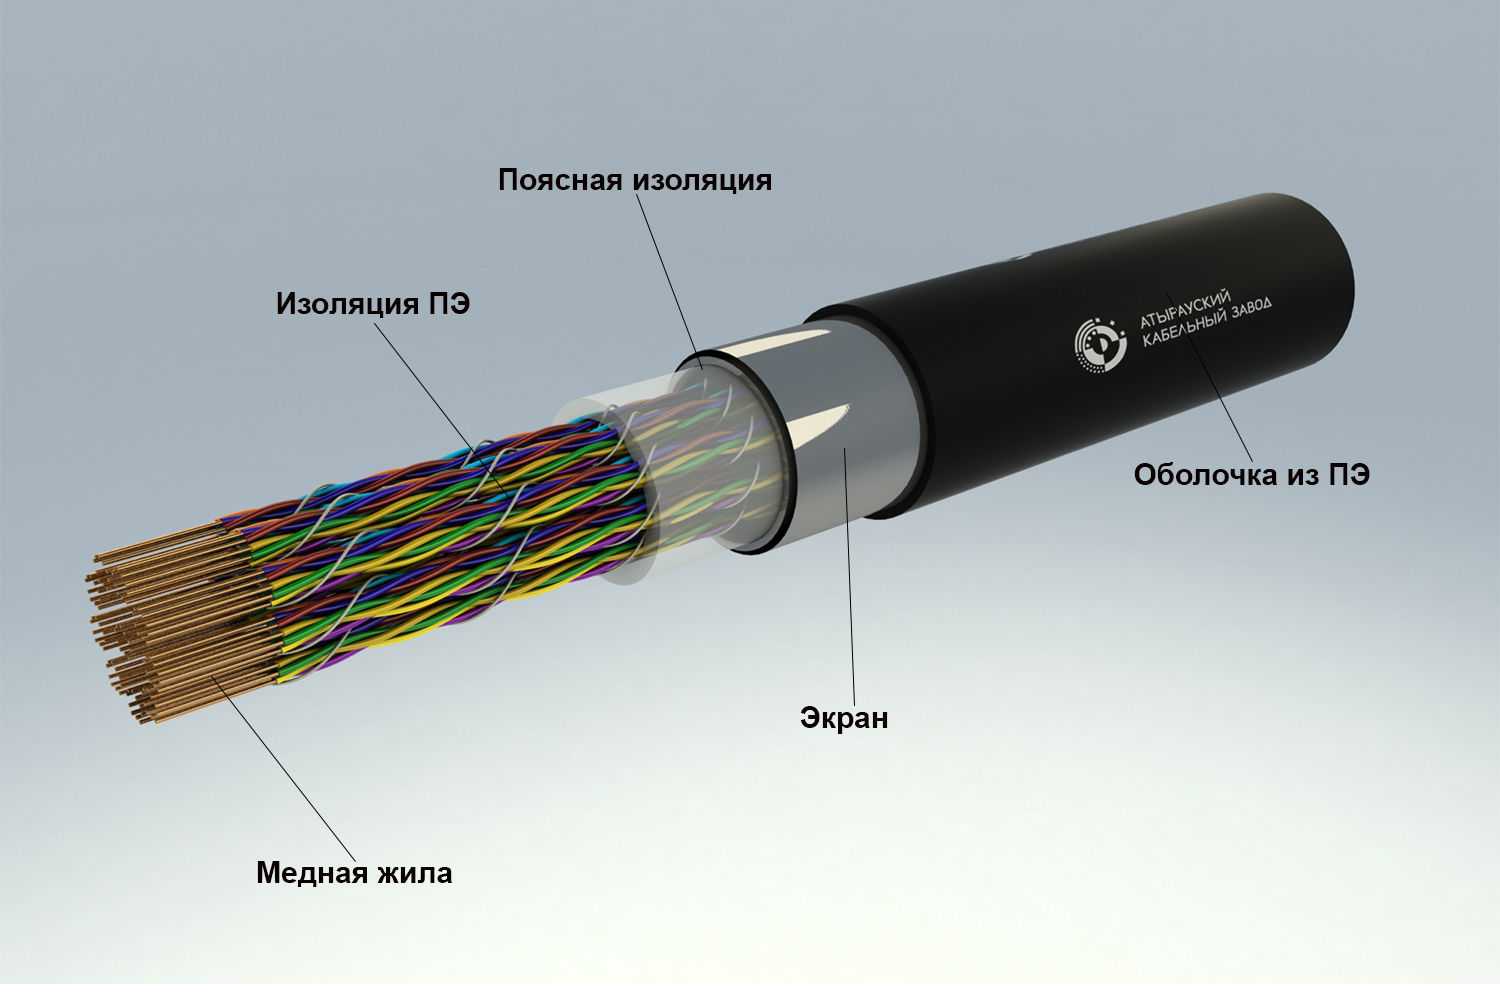 Термостойкий кабель для сауны: правильный выбор провода, основы безопасного монтажа